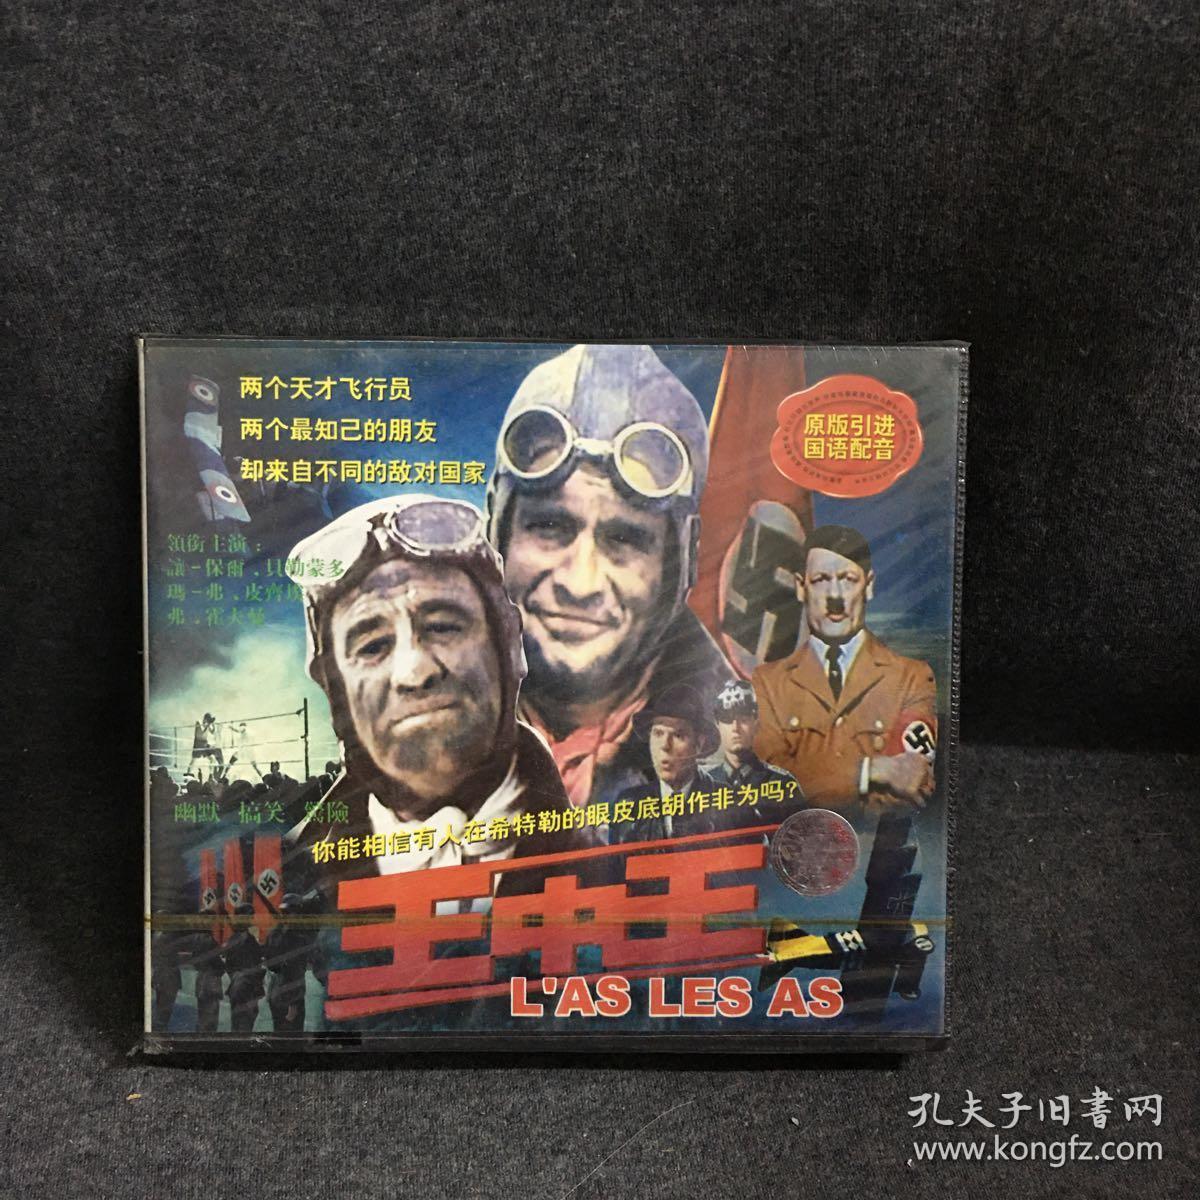 王中王   VCD  2碟片 外国电影 光盘  未拆封（个人收藏品) 绝版